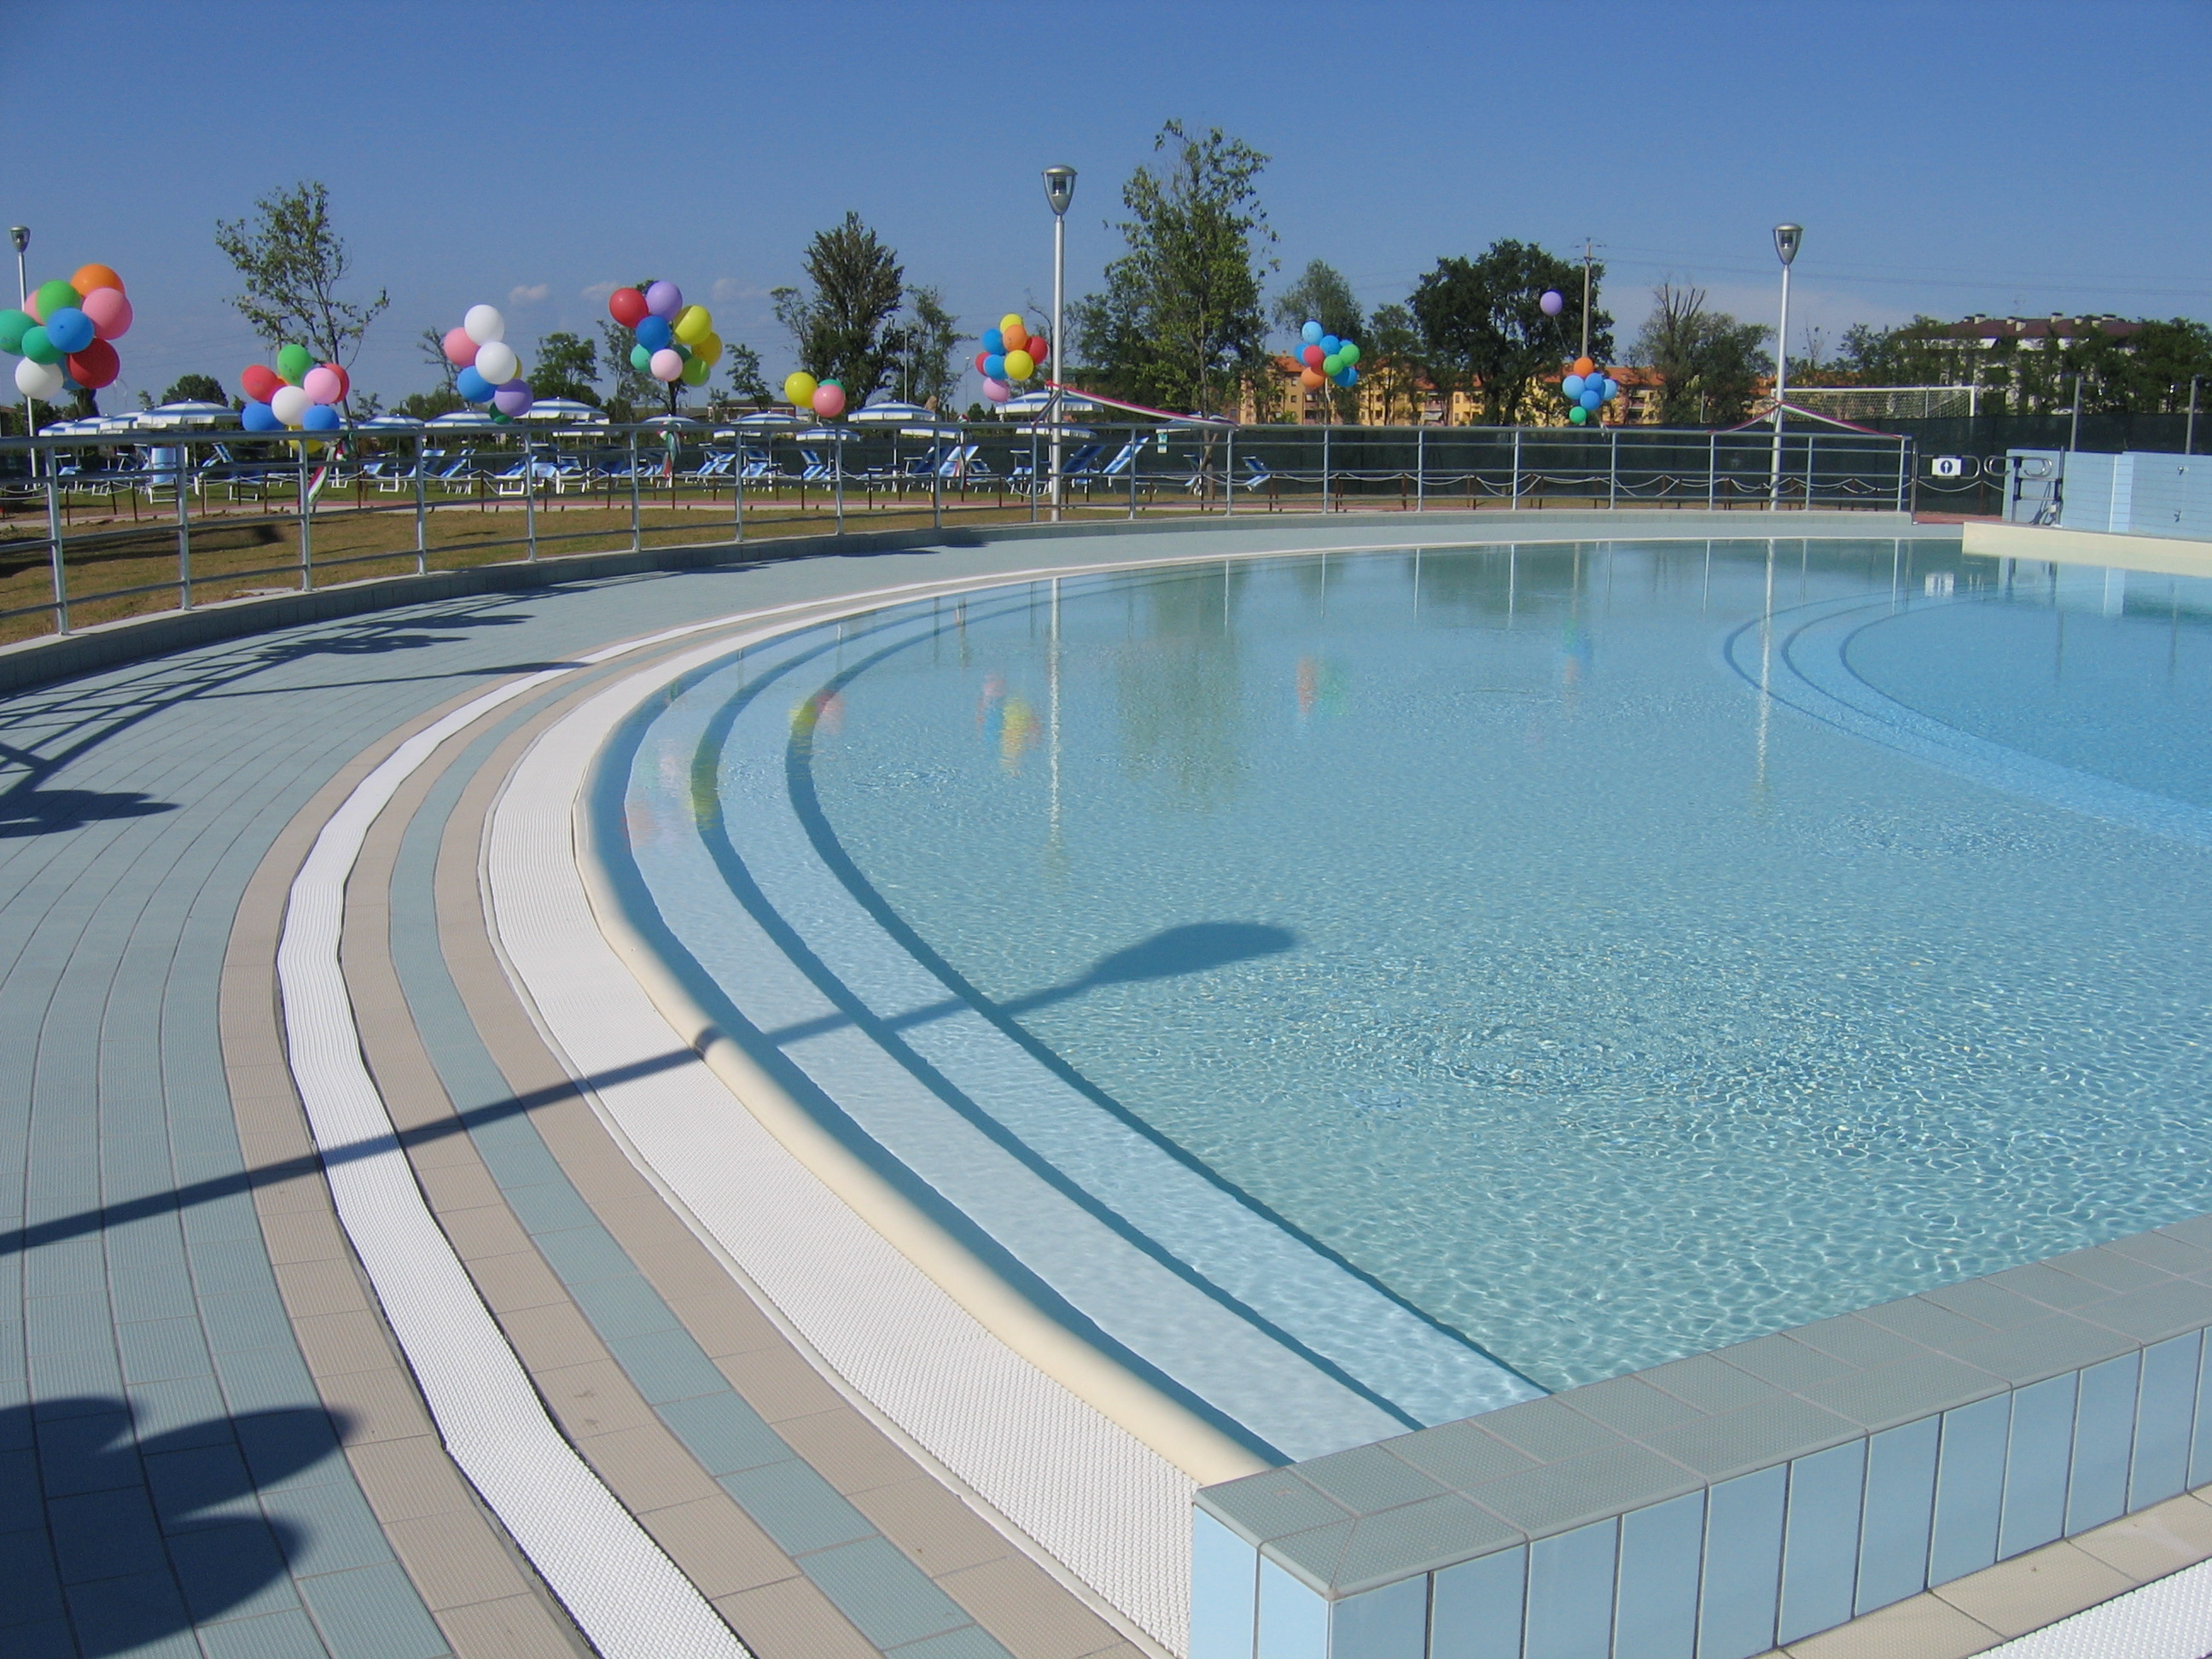 il complesso piscina palestra di Ozzano nella sua interezza